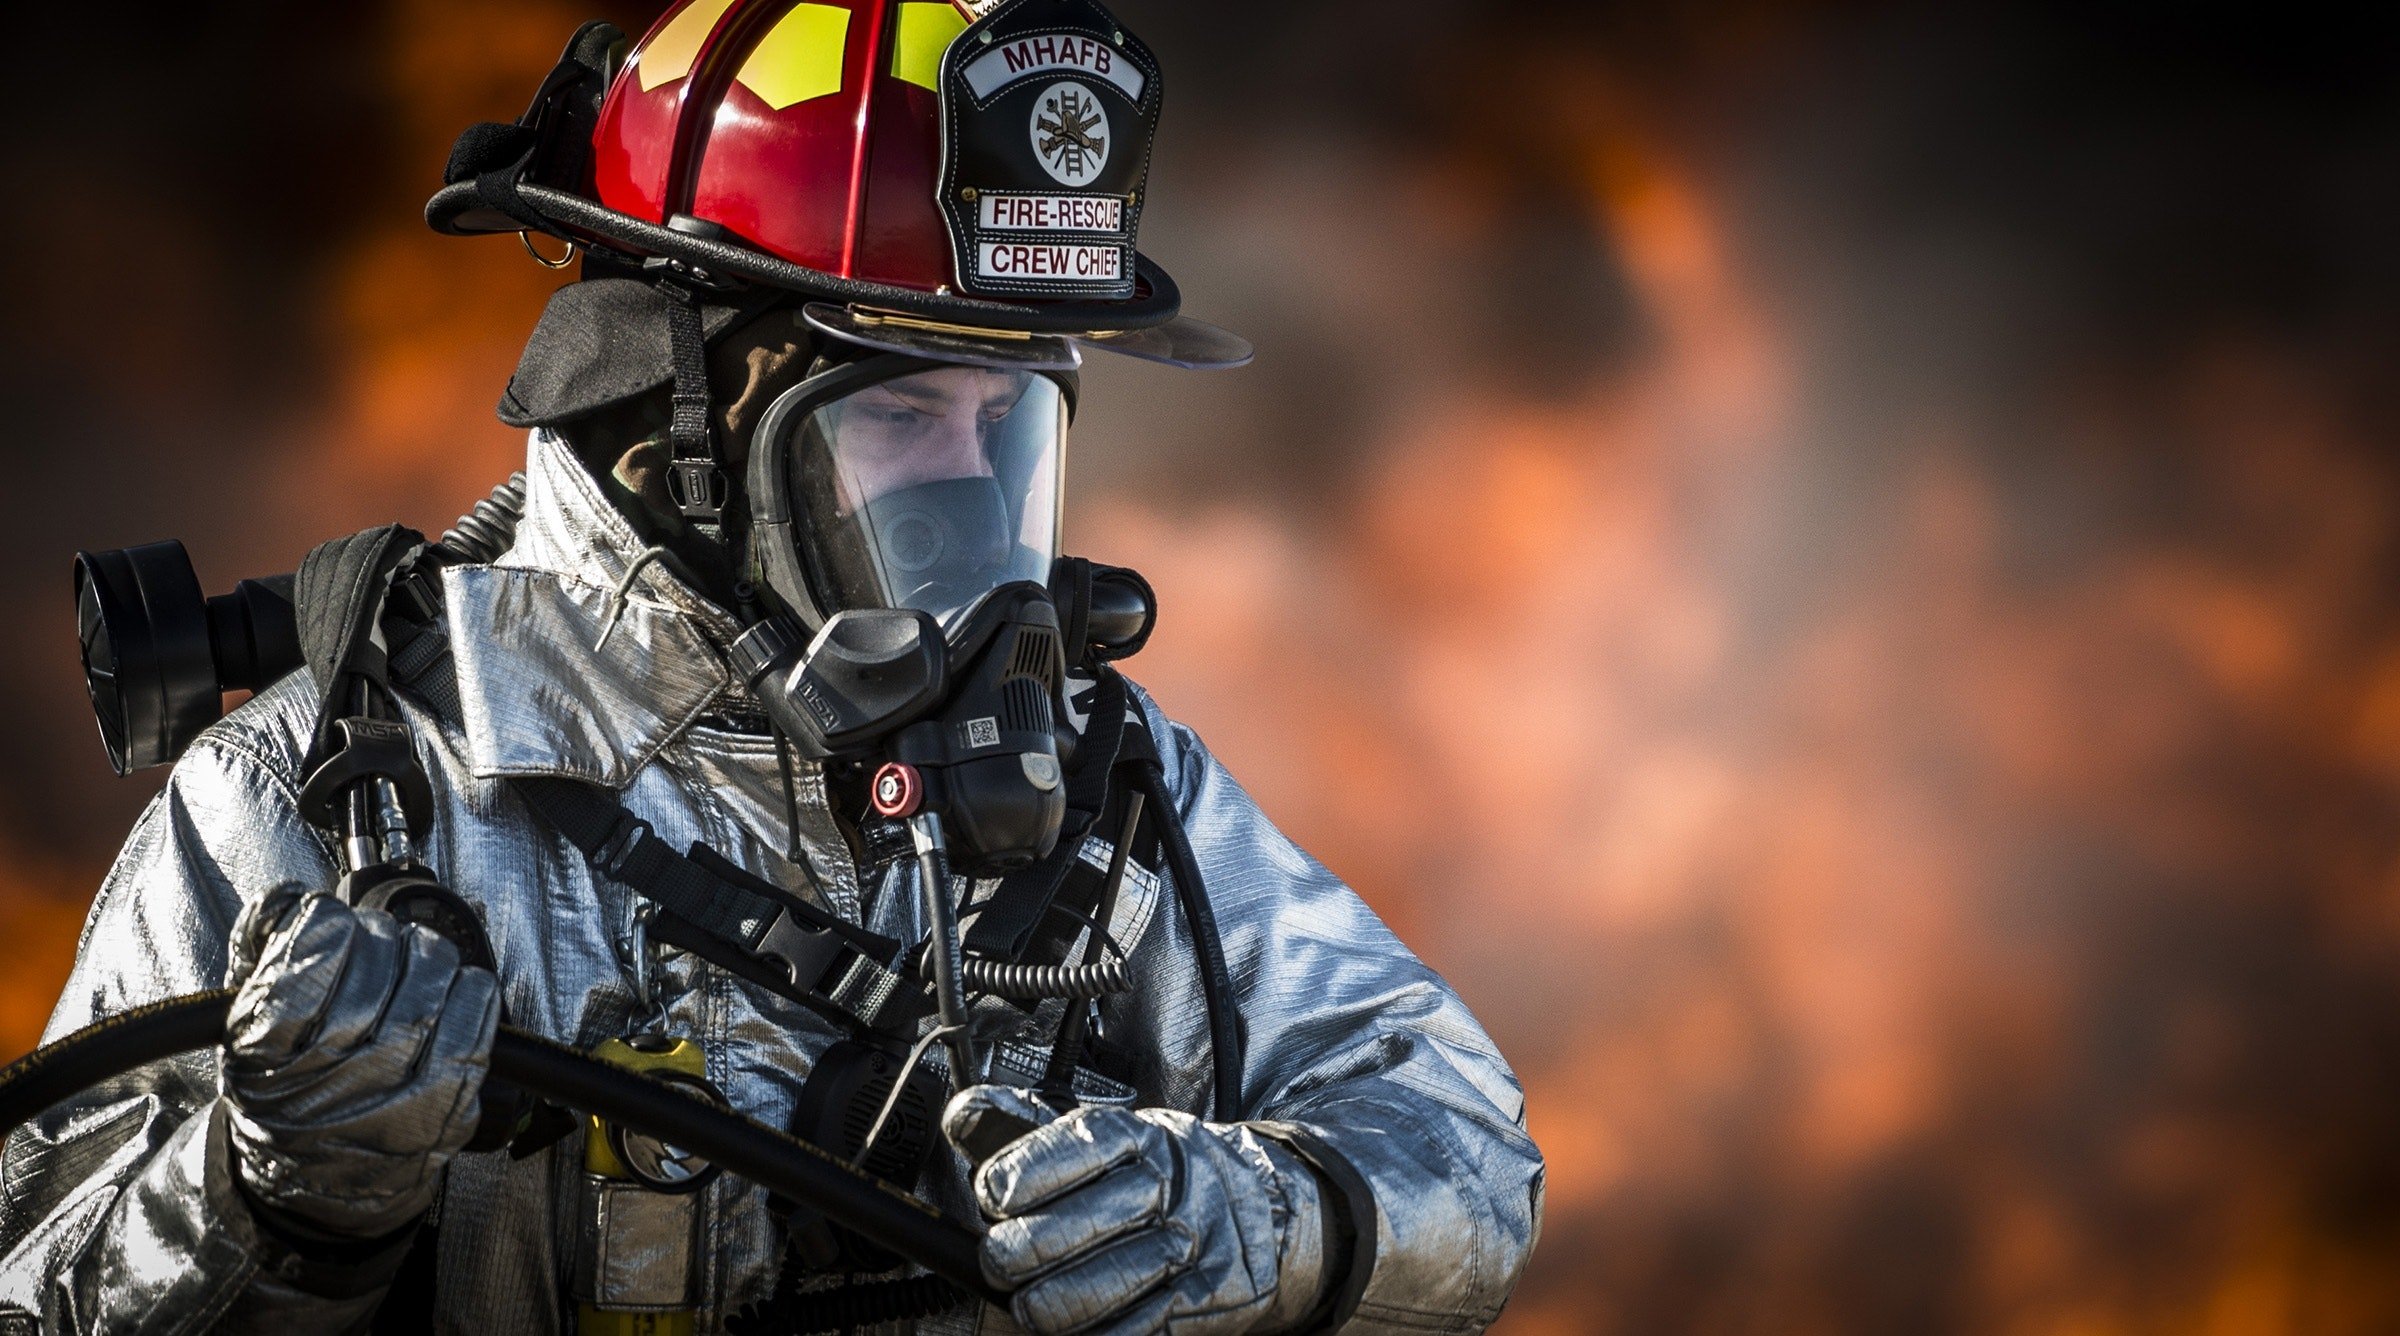 Bombero con traje especial contra incendios. | Foto: Pexels